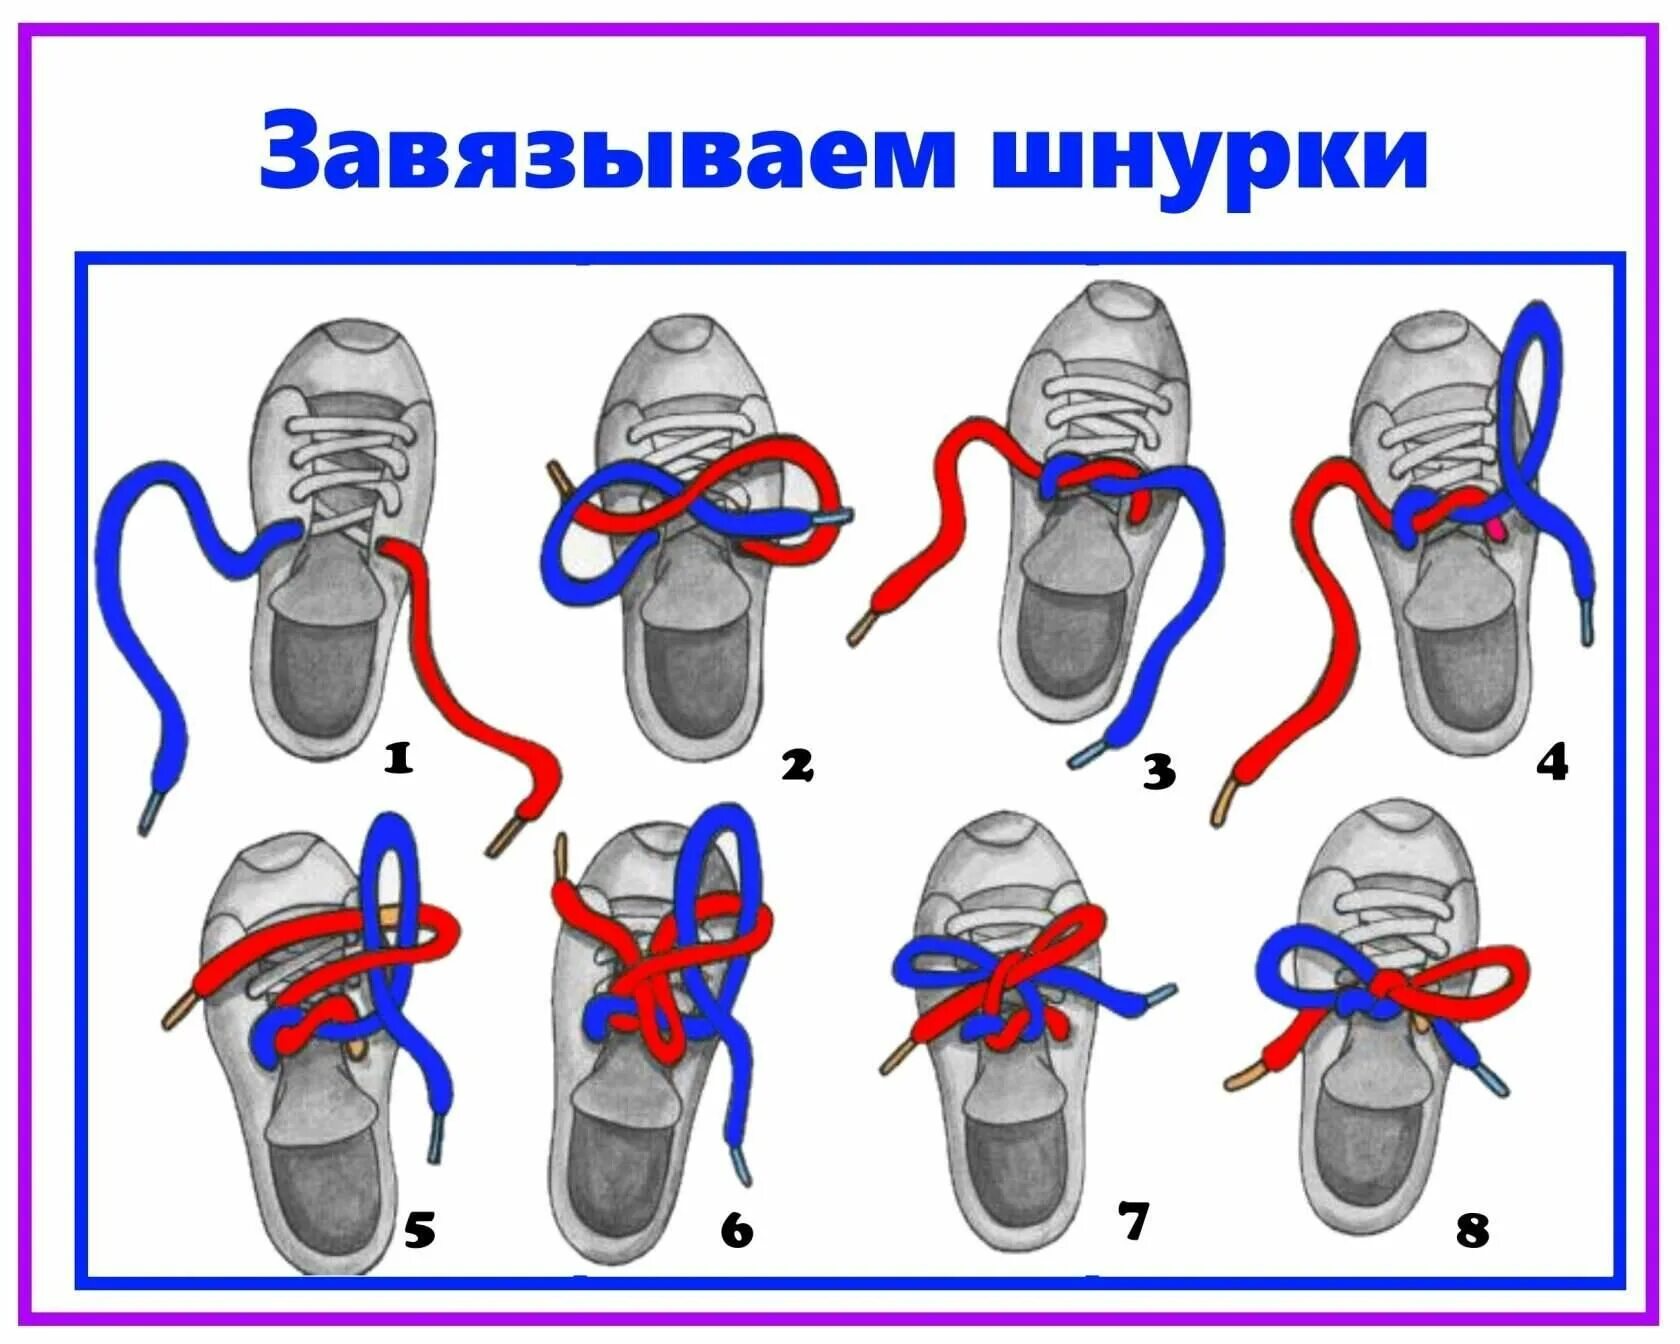 Завязать шнурки бантиком пошагово. Алгоритм завязывания шнурков для детей. Схема завязывания шнурков для детей. Схема как завязывать шнурки для детей. Алгоритм завязывания шнурков в детском саду.